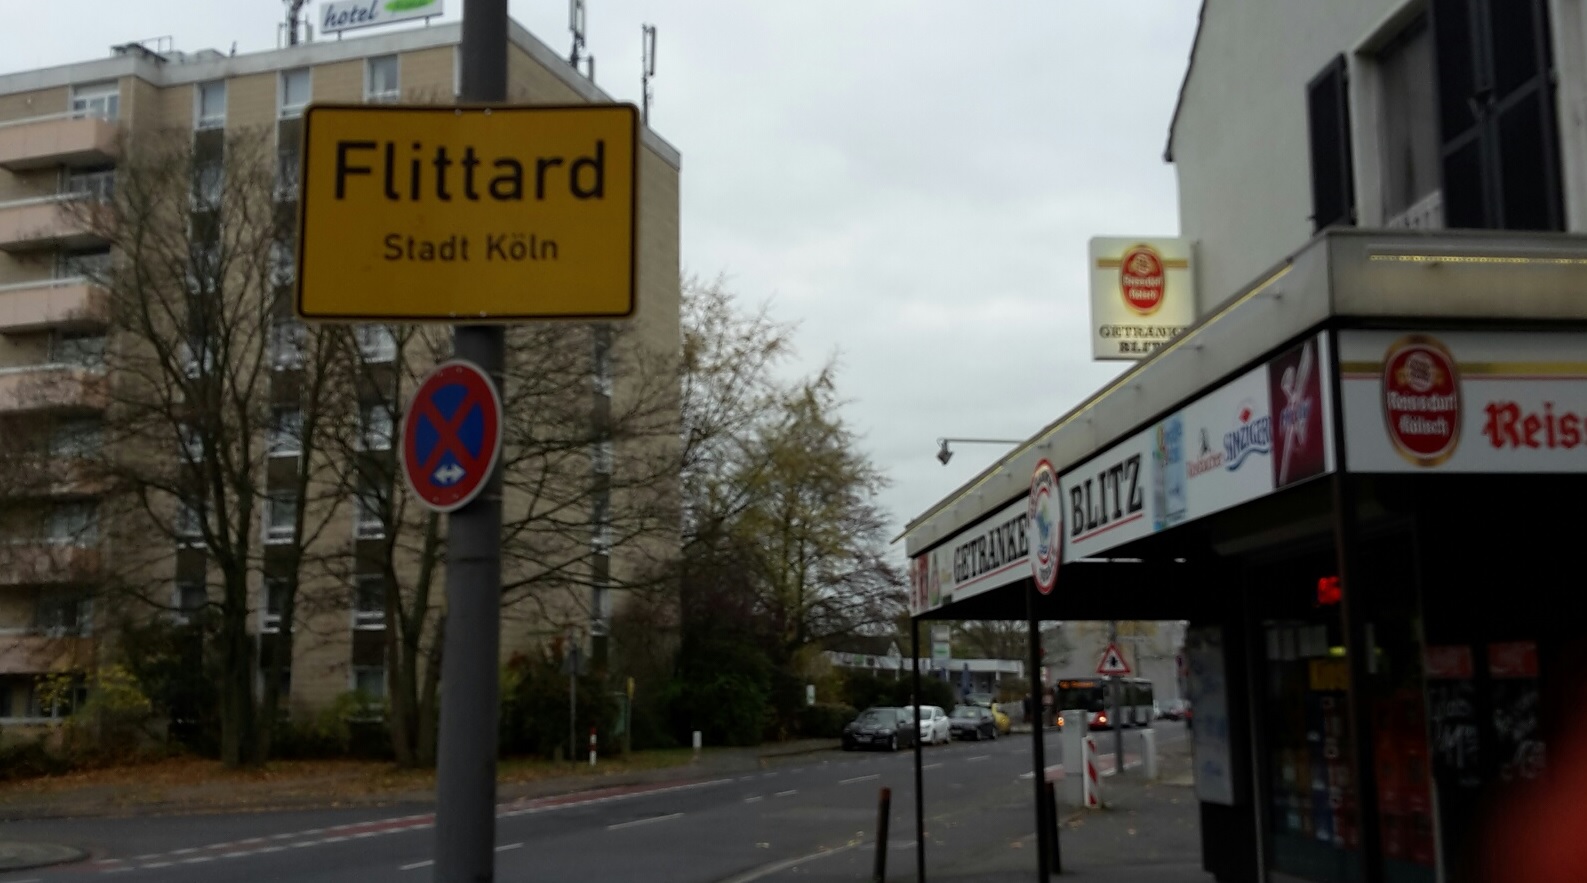 Köln Flittard Ortseingang